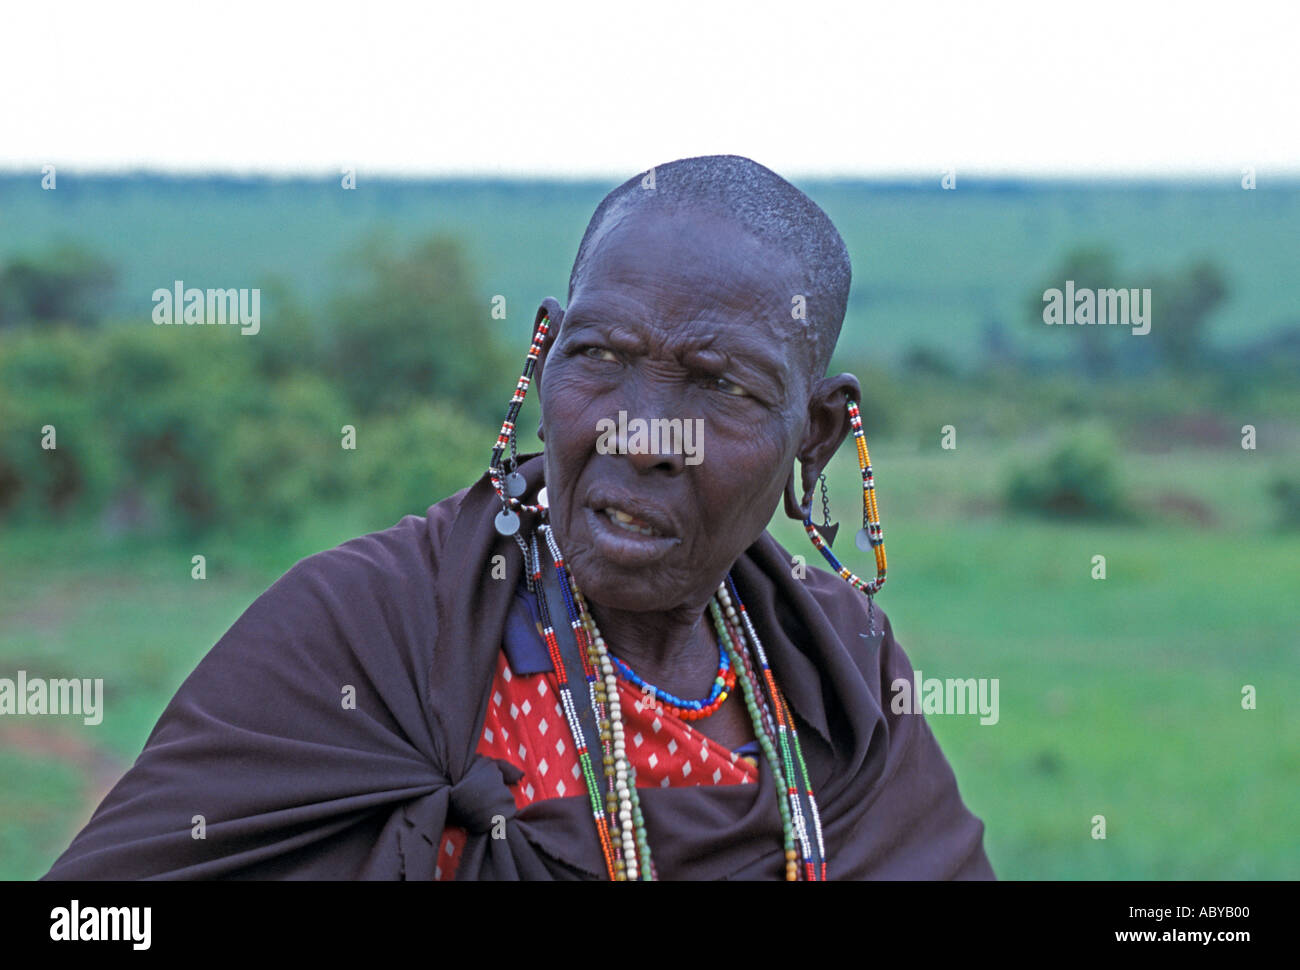 Afrique Kenya Masai Mara National Reserve Portrait de femme Masai traditionnelles avec les oreilles percées et des perles Banque D'Images